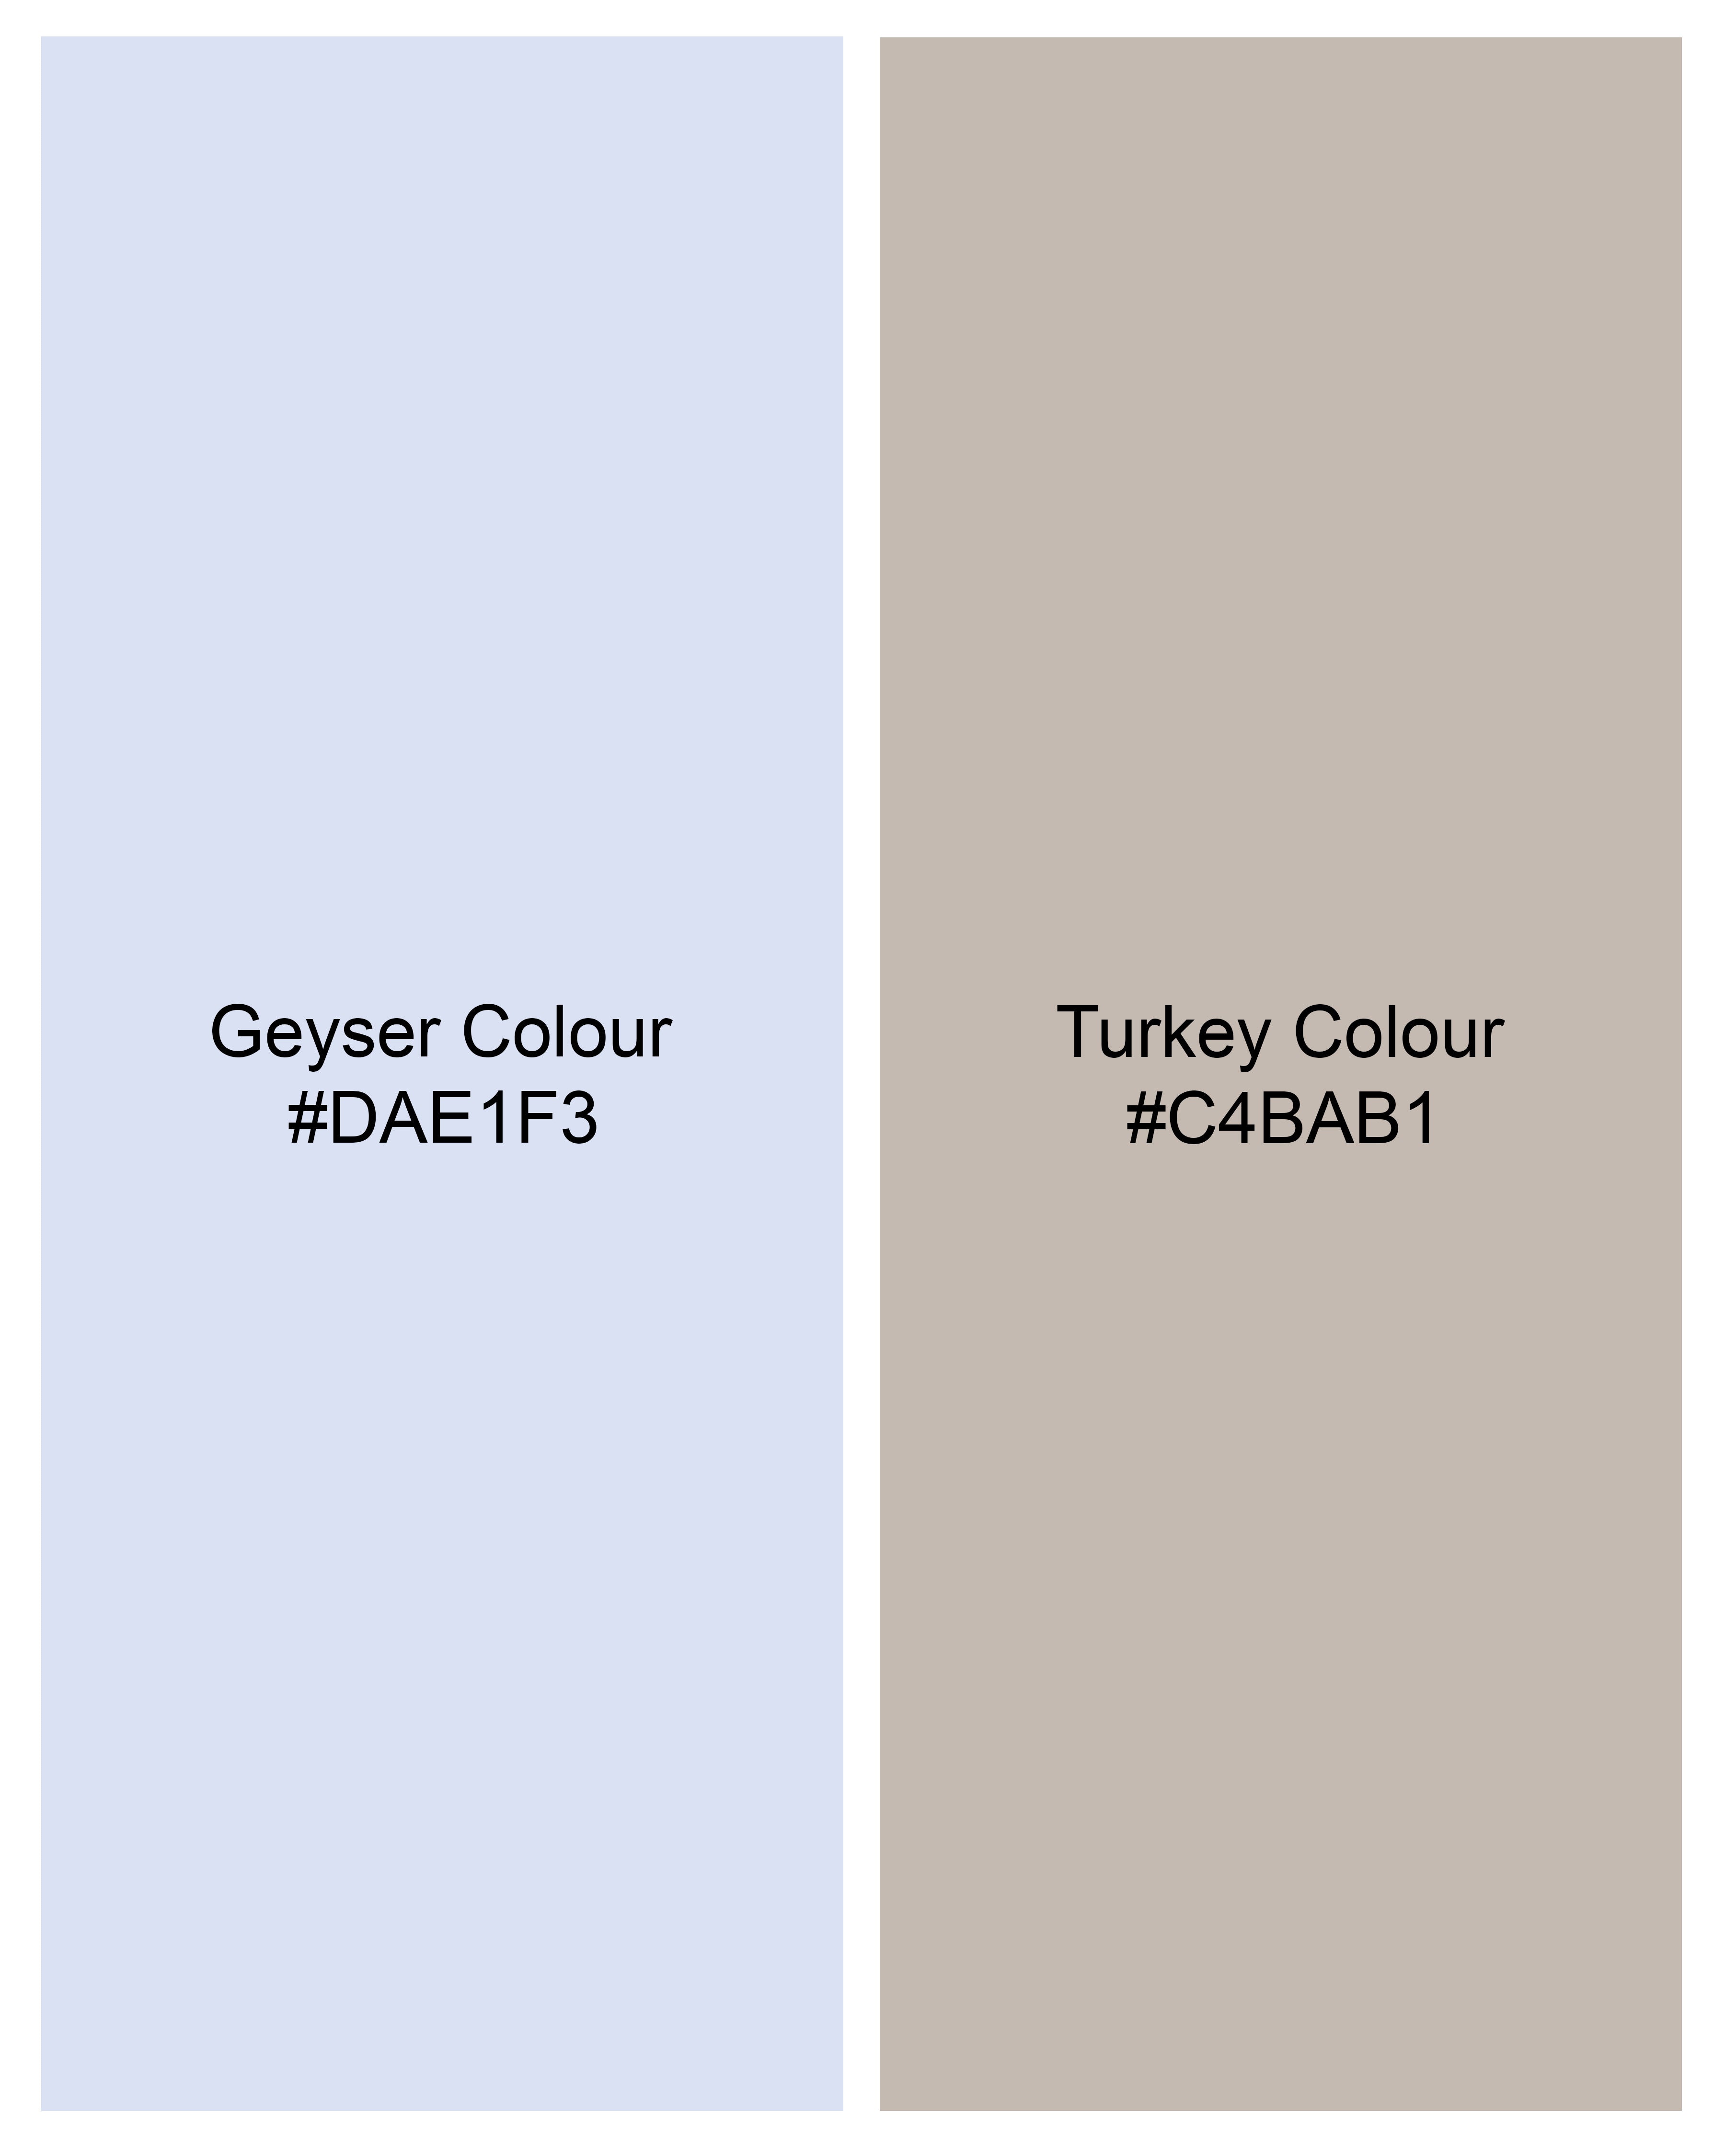 Geyser Blue with Turkey Brown Windowpane Premium Cotton Shirt 9513-38, 9513-H-38, 9513-39, 9513-H-39, 9513-40, 9513-H-40, 9513-42, 9513-H-42, 9513-44, 9513-H-44, 9513-46, 9513-H-46, 9513-48, 9513-H-48, 9513-50, 9513-H-50, 9513-52, 9513-H-52